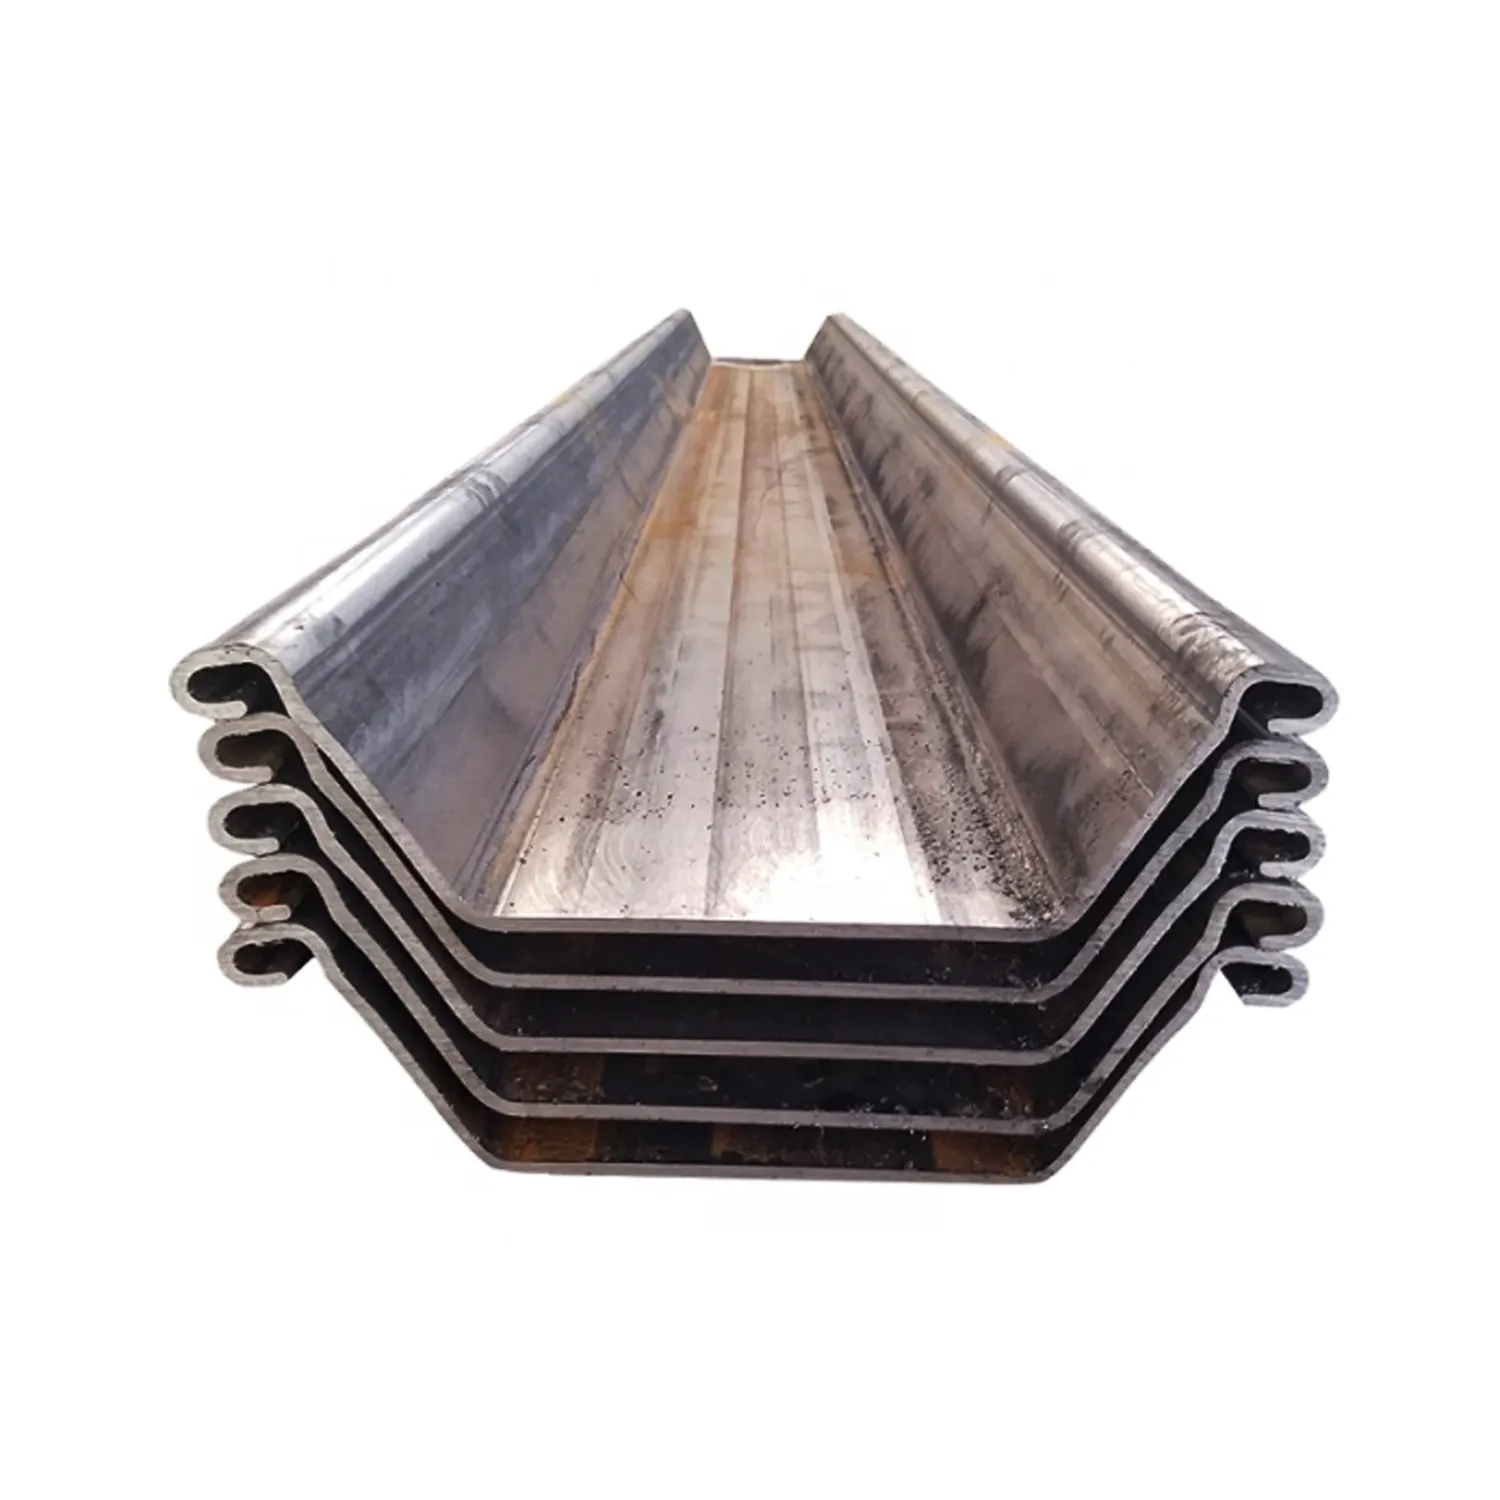 Perfil de hoja de acero enrollado en caliente, pila China tipo 2, perfil u, bajo precio